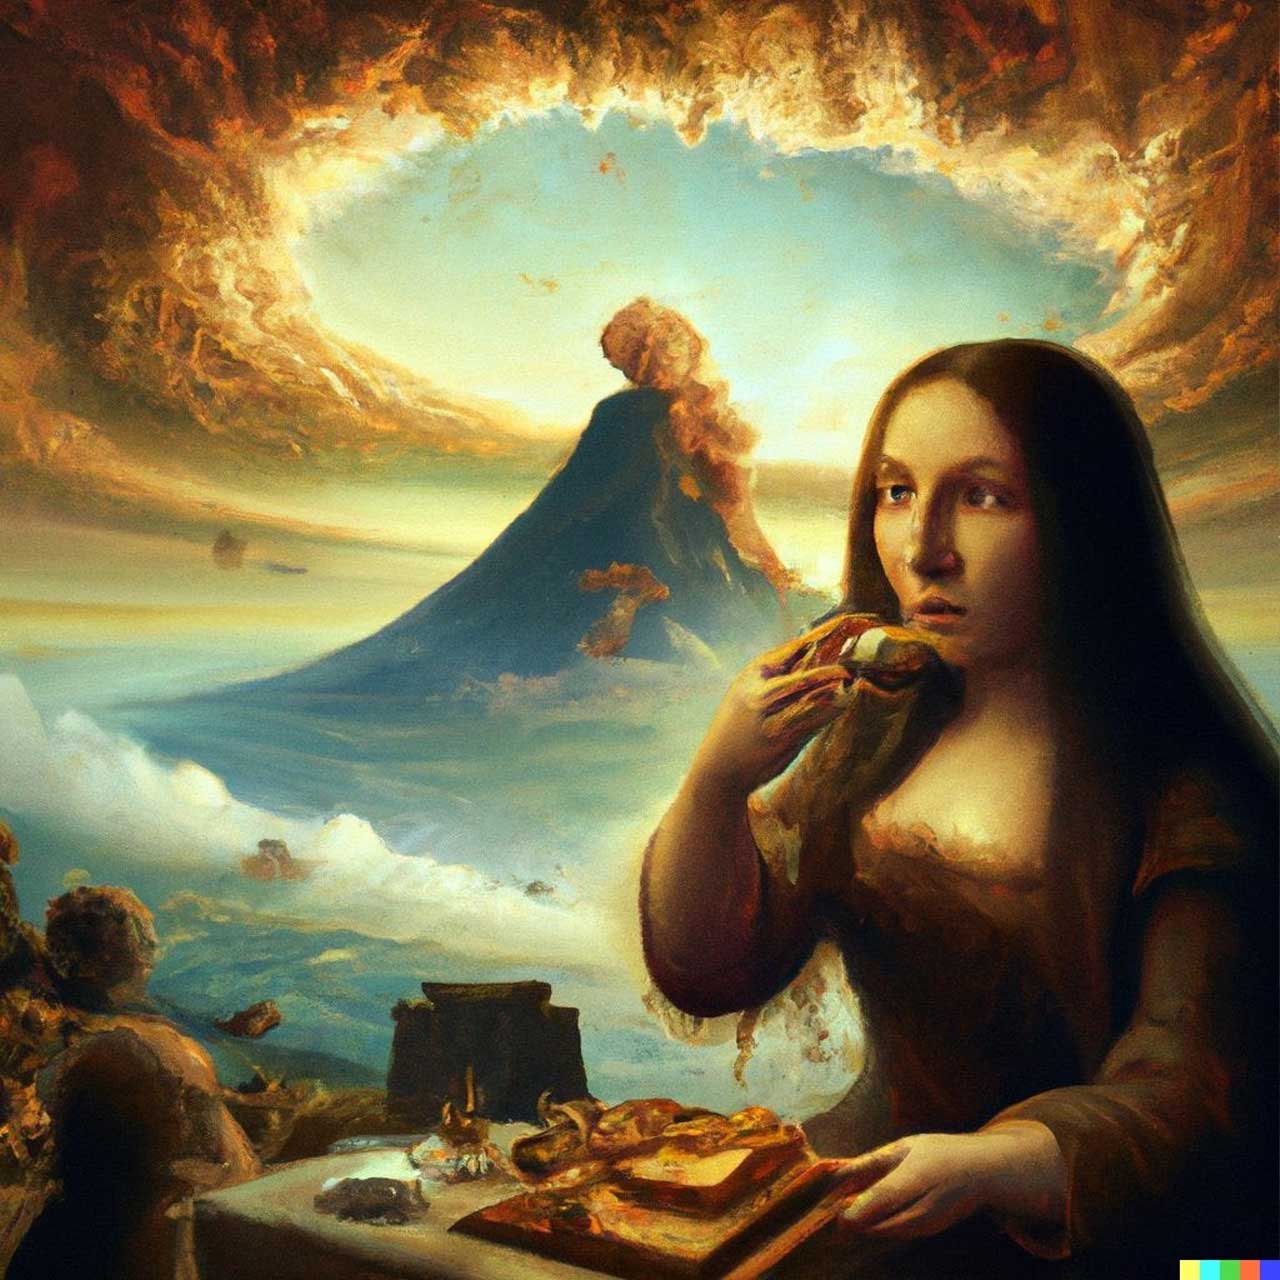 Mona Lisa eats cake